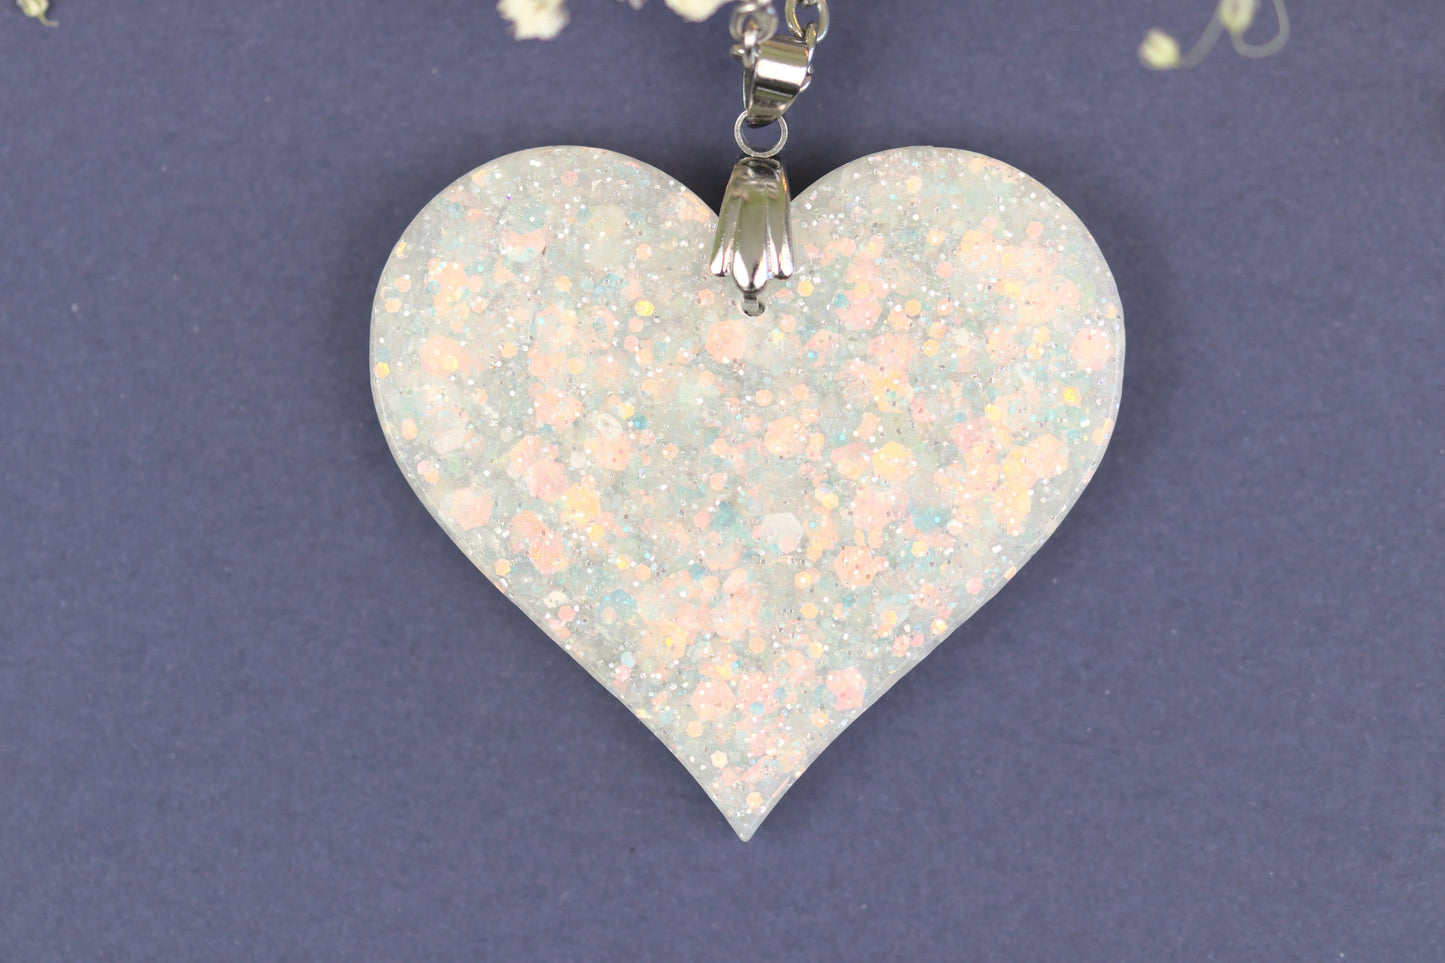 Colier Mare - Inima - Inox -  Alb cu Argintiu - Handmade  (Colecția Clar de lună)